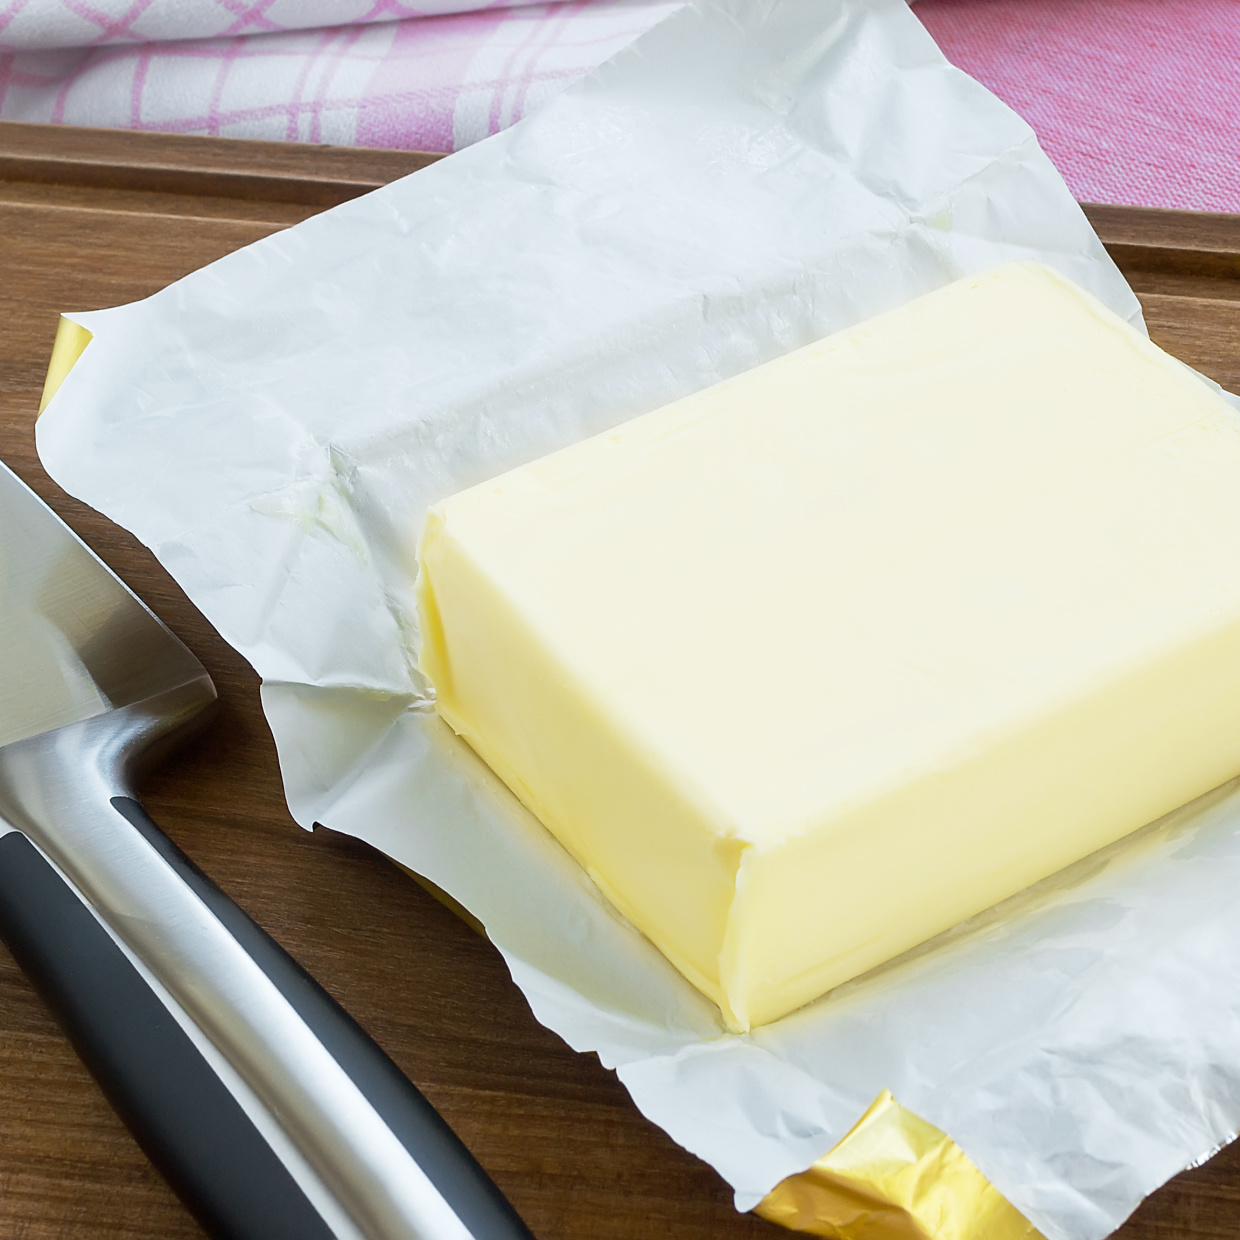  「バター」包丁に付かずにスパッと切る裏ワザ 